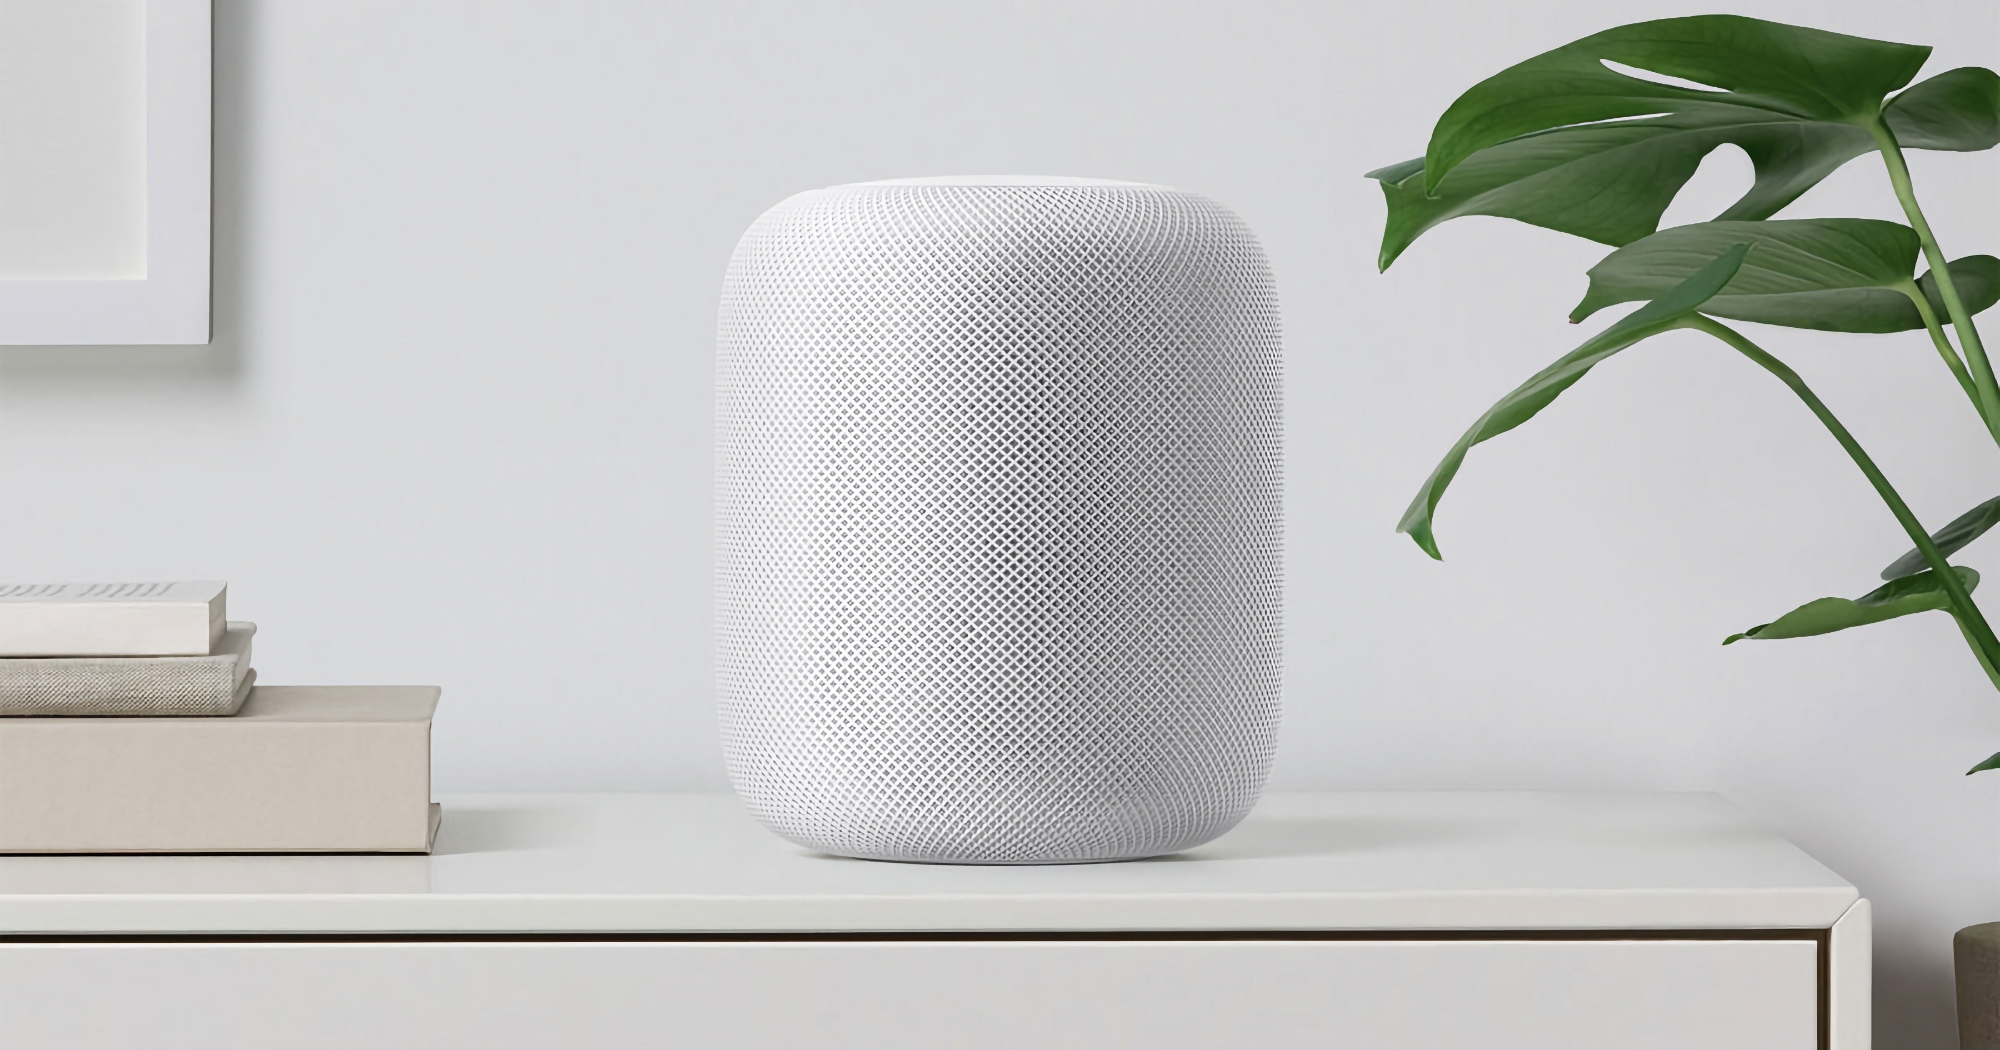 Inaspettatamente! Apple si sta preparando a rilasciare un nuovo altoparlante intelligente HomePod a grandezza naturale